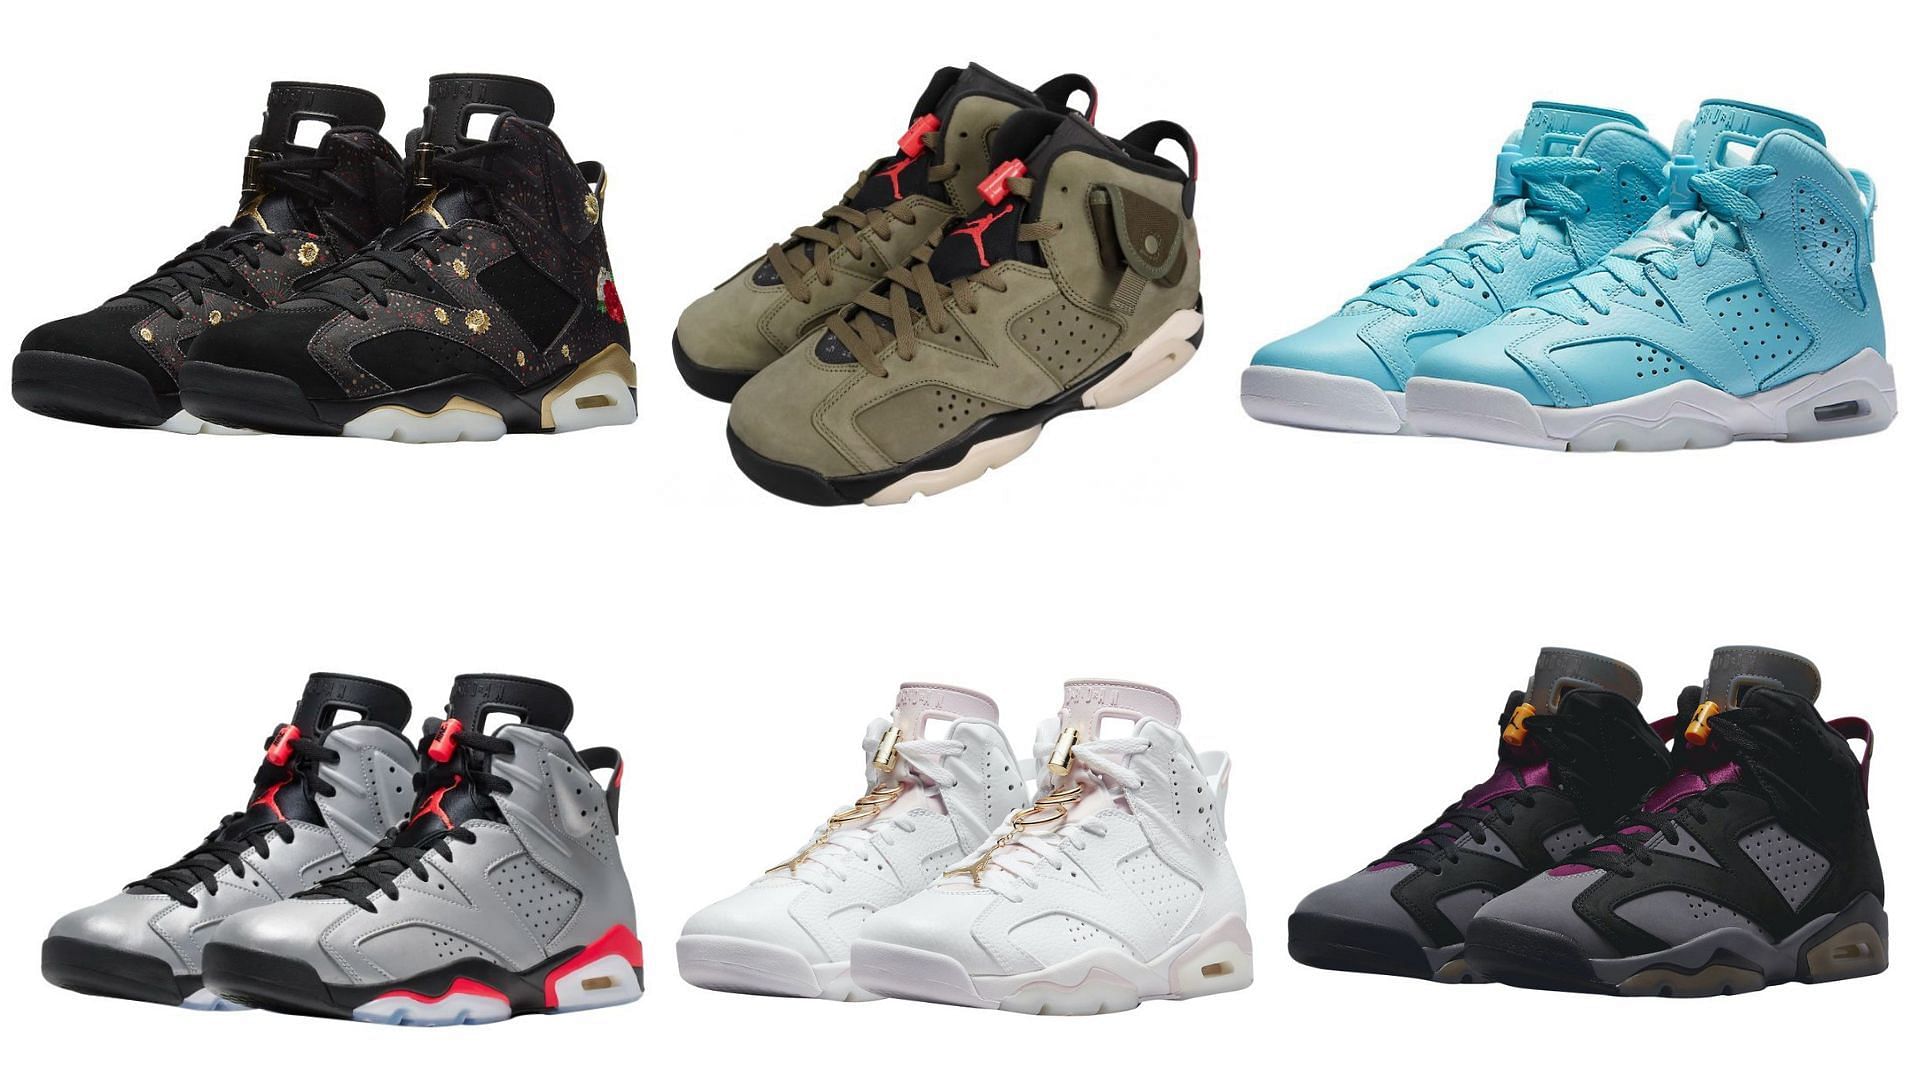 Air Jordan 6 colorways that startled the sneaker world over the years (Image via Sportskeeda)